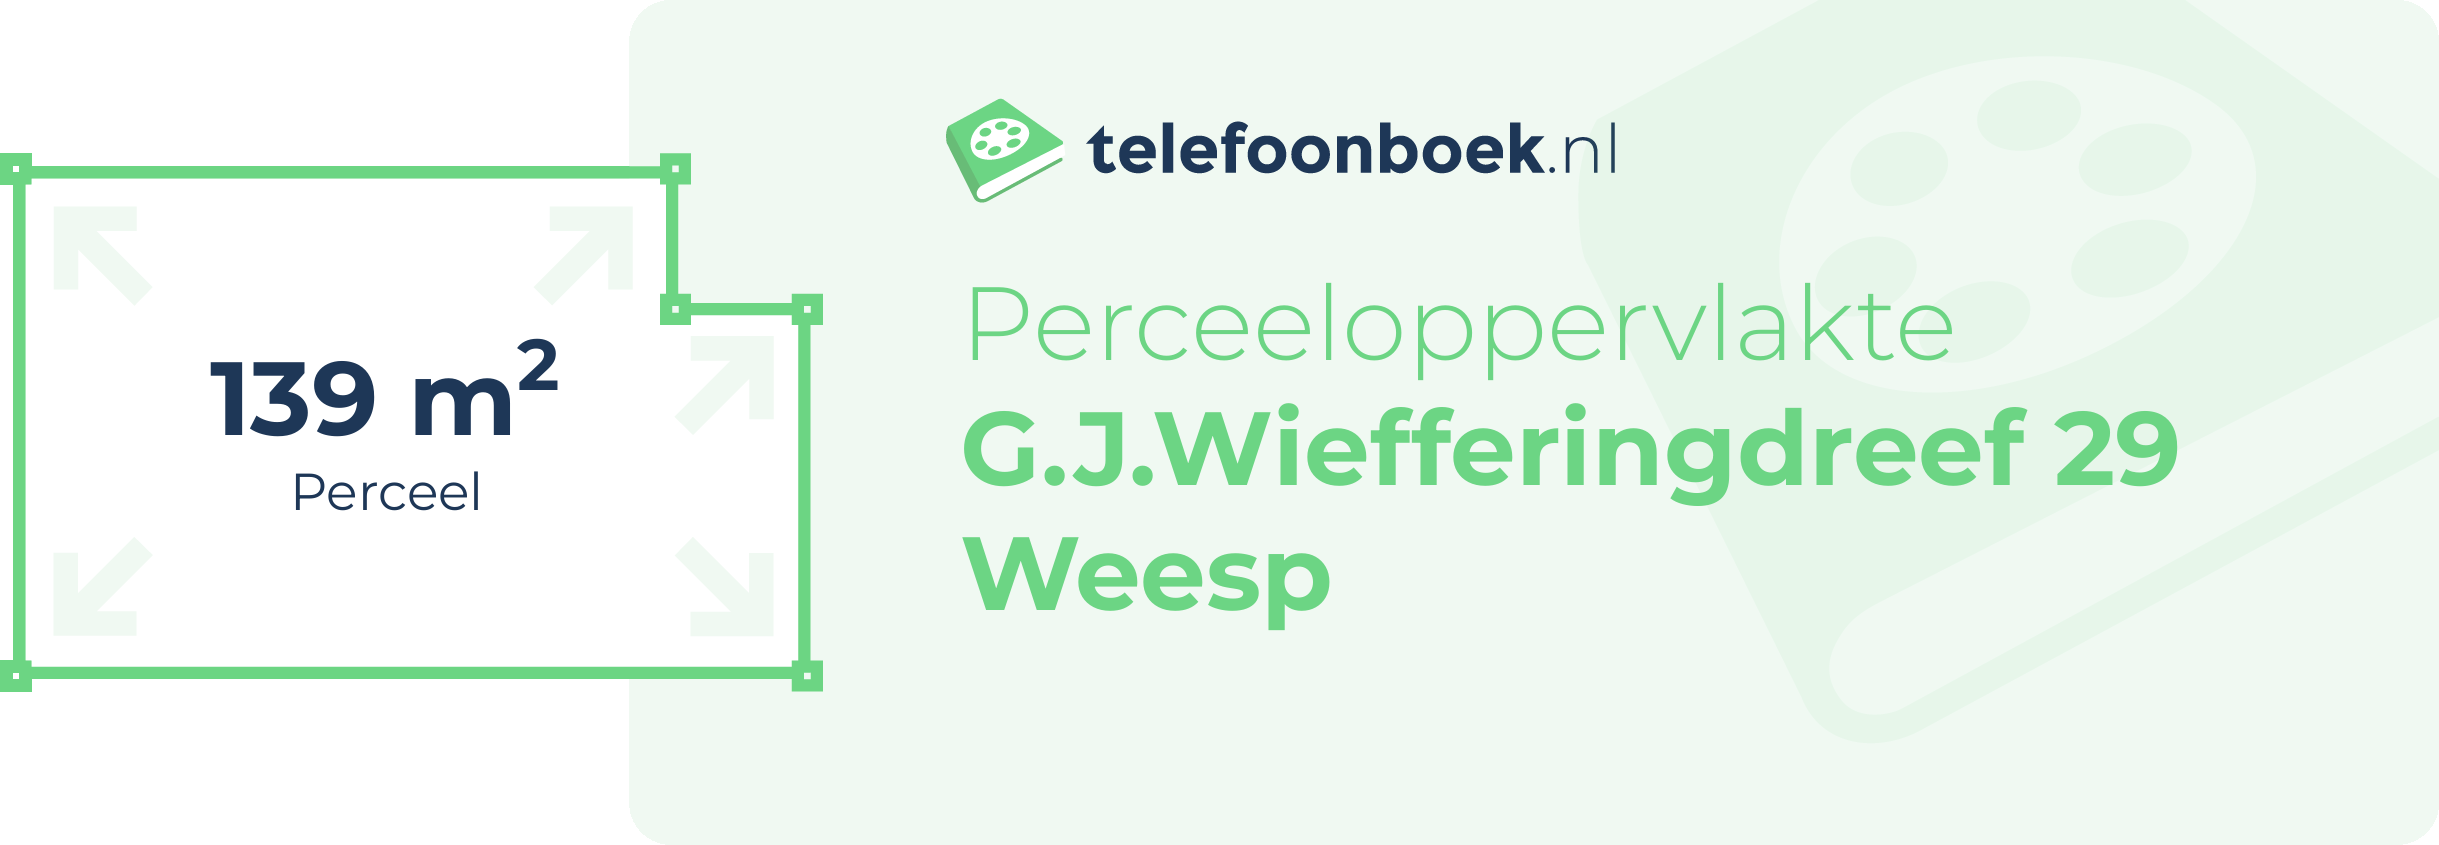 Perceeloppervlakte G.J.Wiefferingdreef 29 Weesp